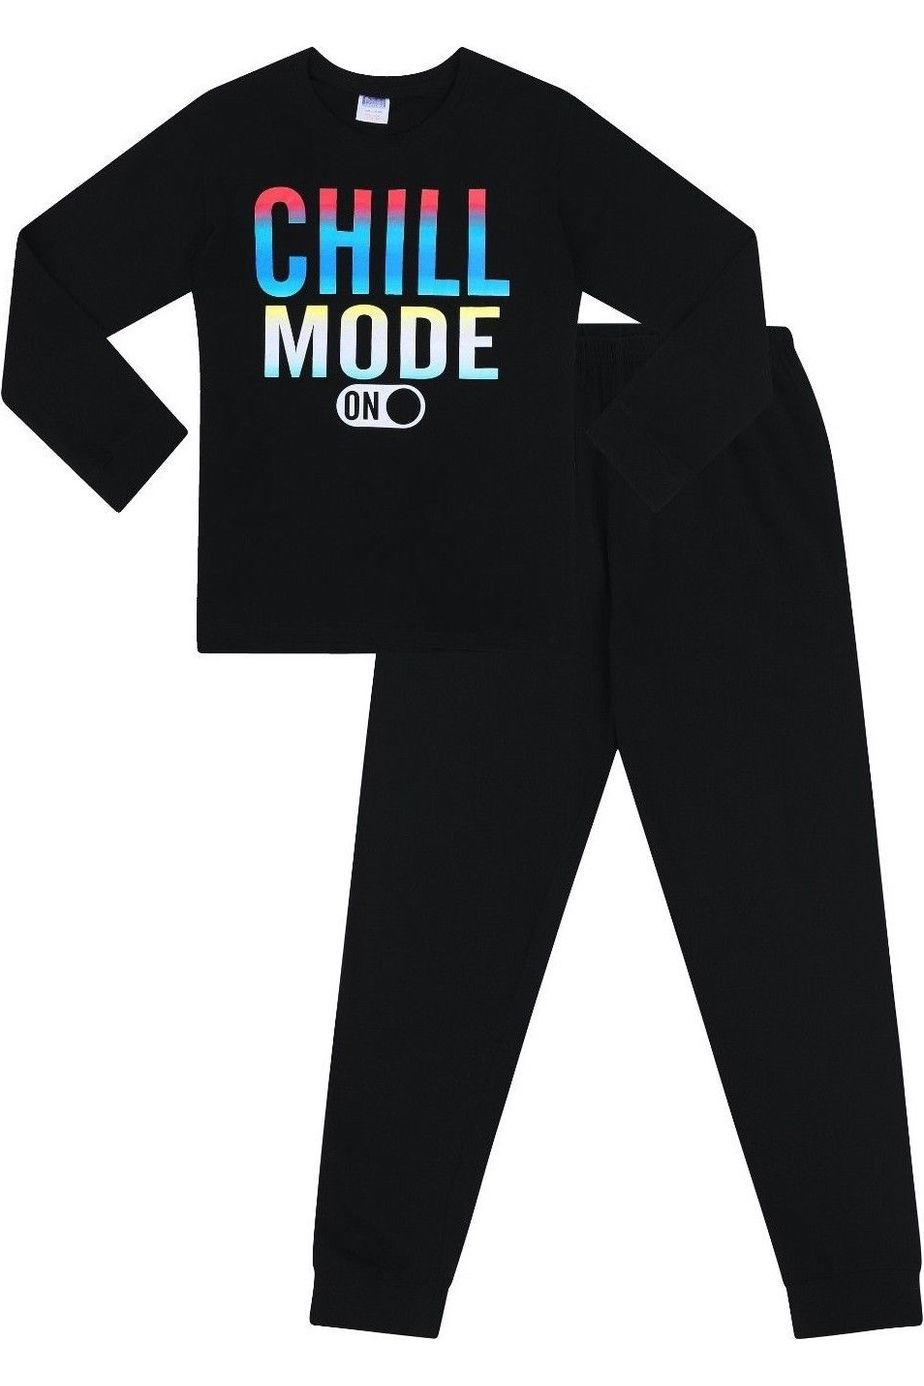 Boys Chill Mode On Long Pyjamas - Pyjamas.com